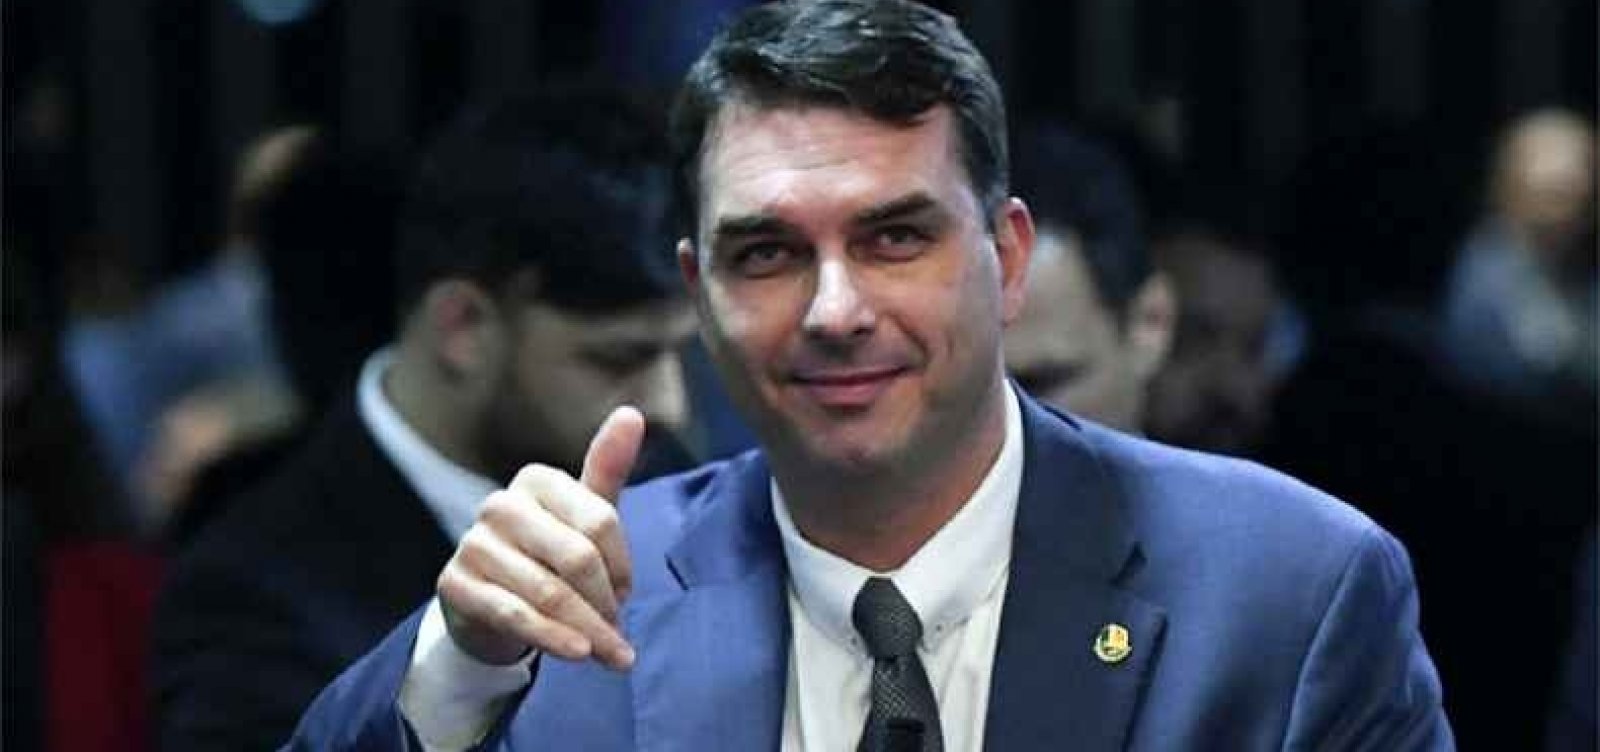 MP comete falhas em pedido para quebras de sigilos do caso Flávio Bolsonaro, diz jornal